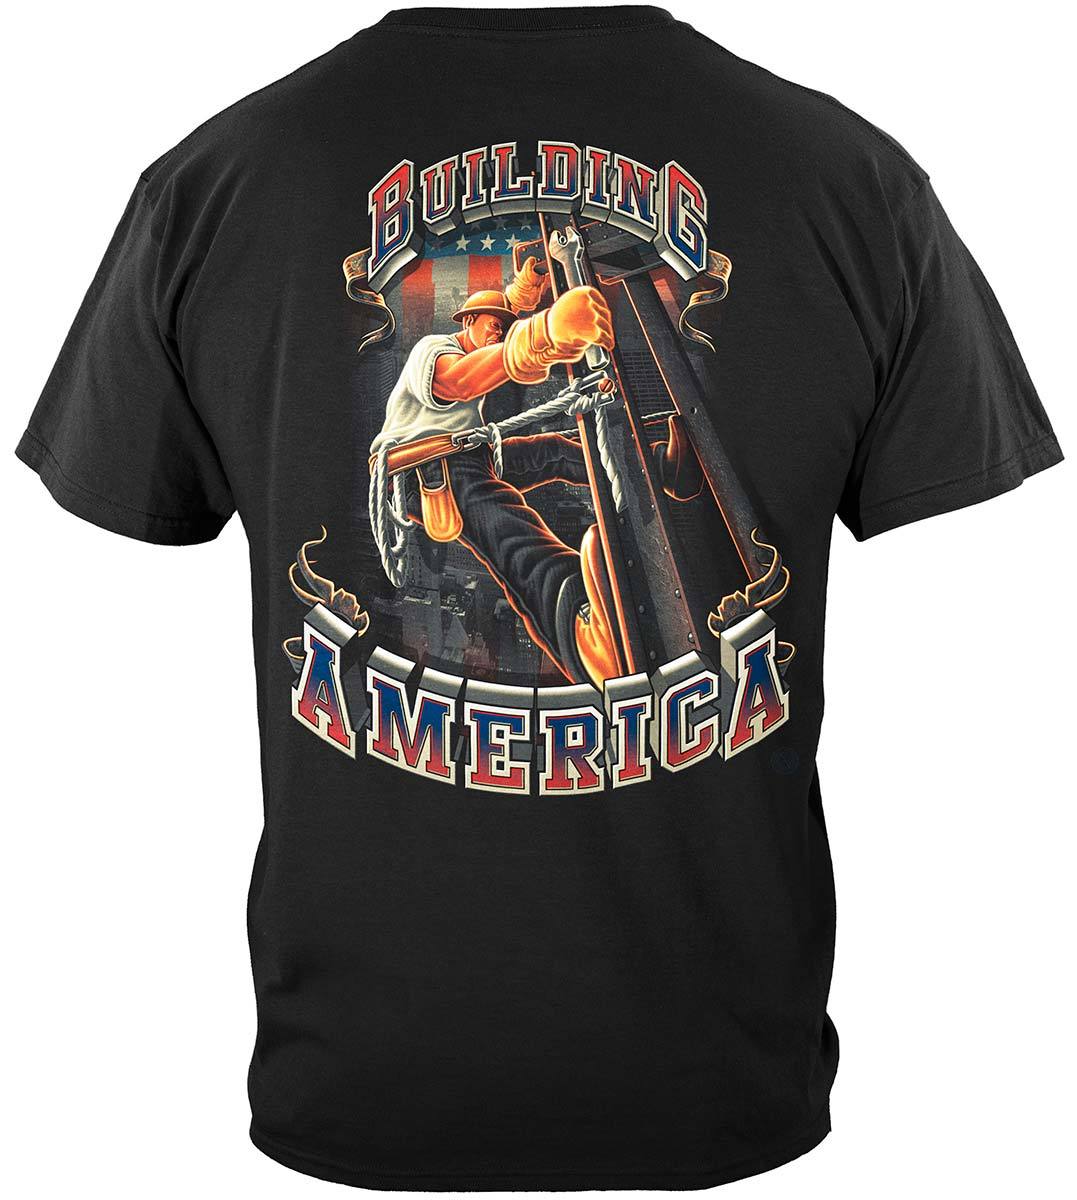 American Iron Worker Premium T-Shirt